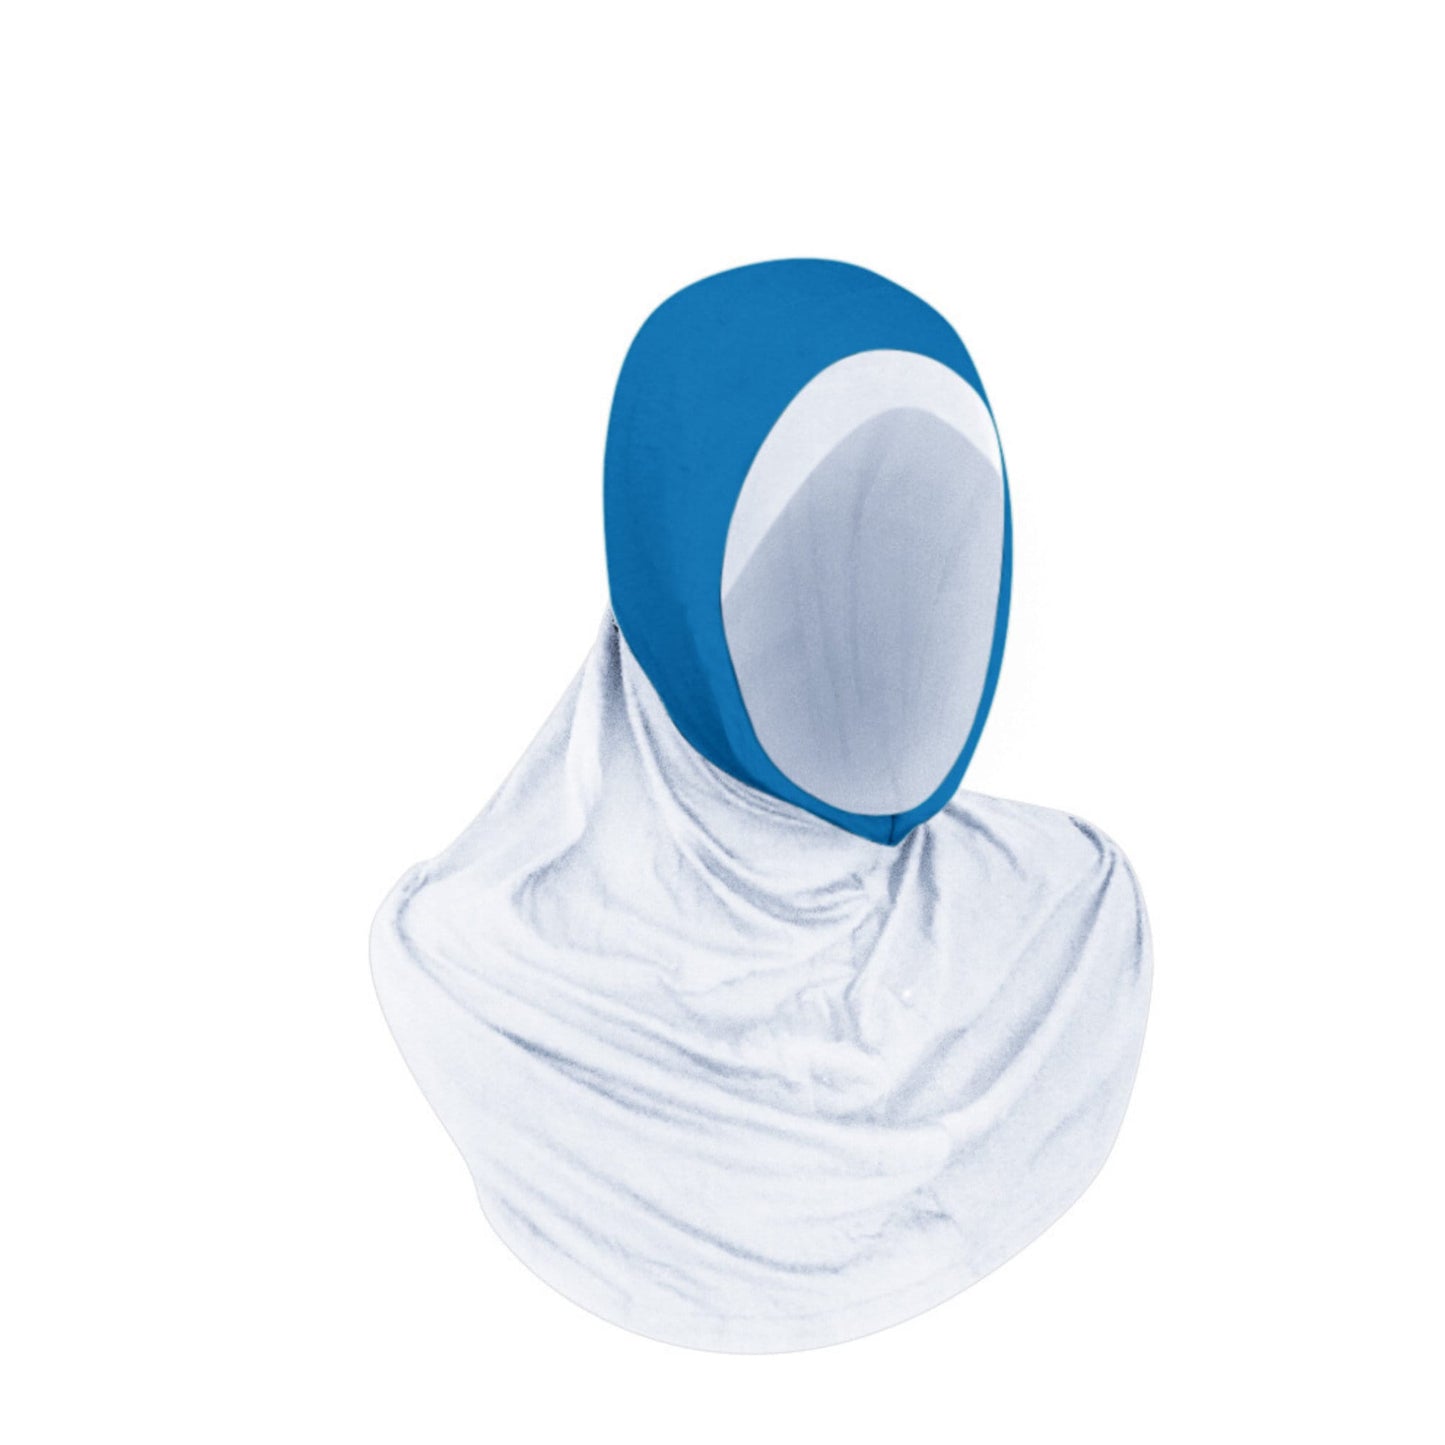 Sports Hijab Athletic Hijab Medical Hijab White and Blue Hijab Ninja Hijab Al Ameera Instant Hijab Quick Hijab